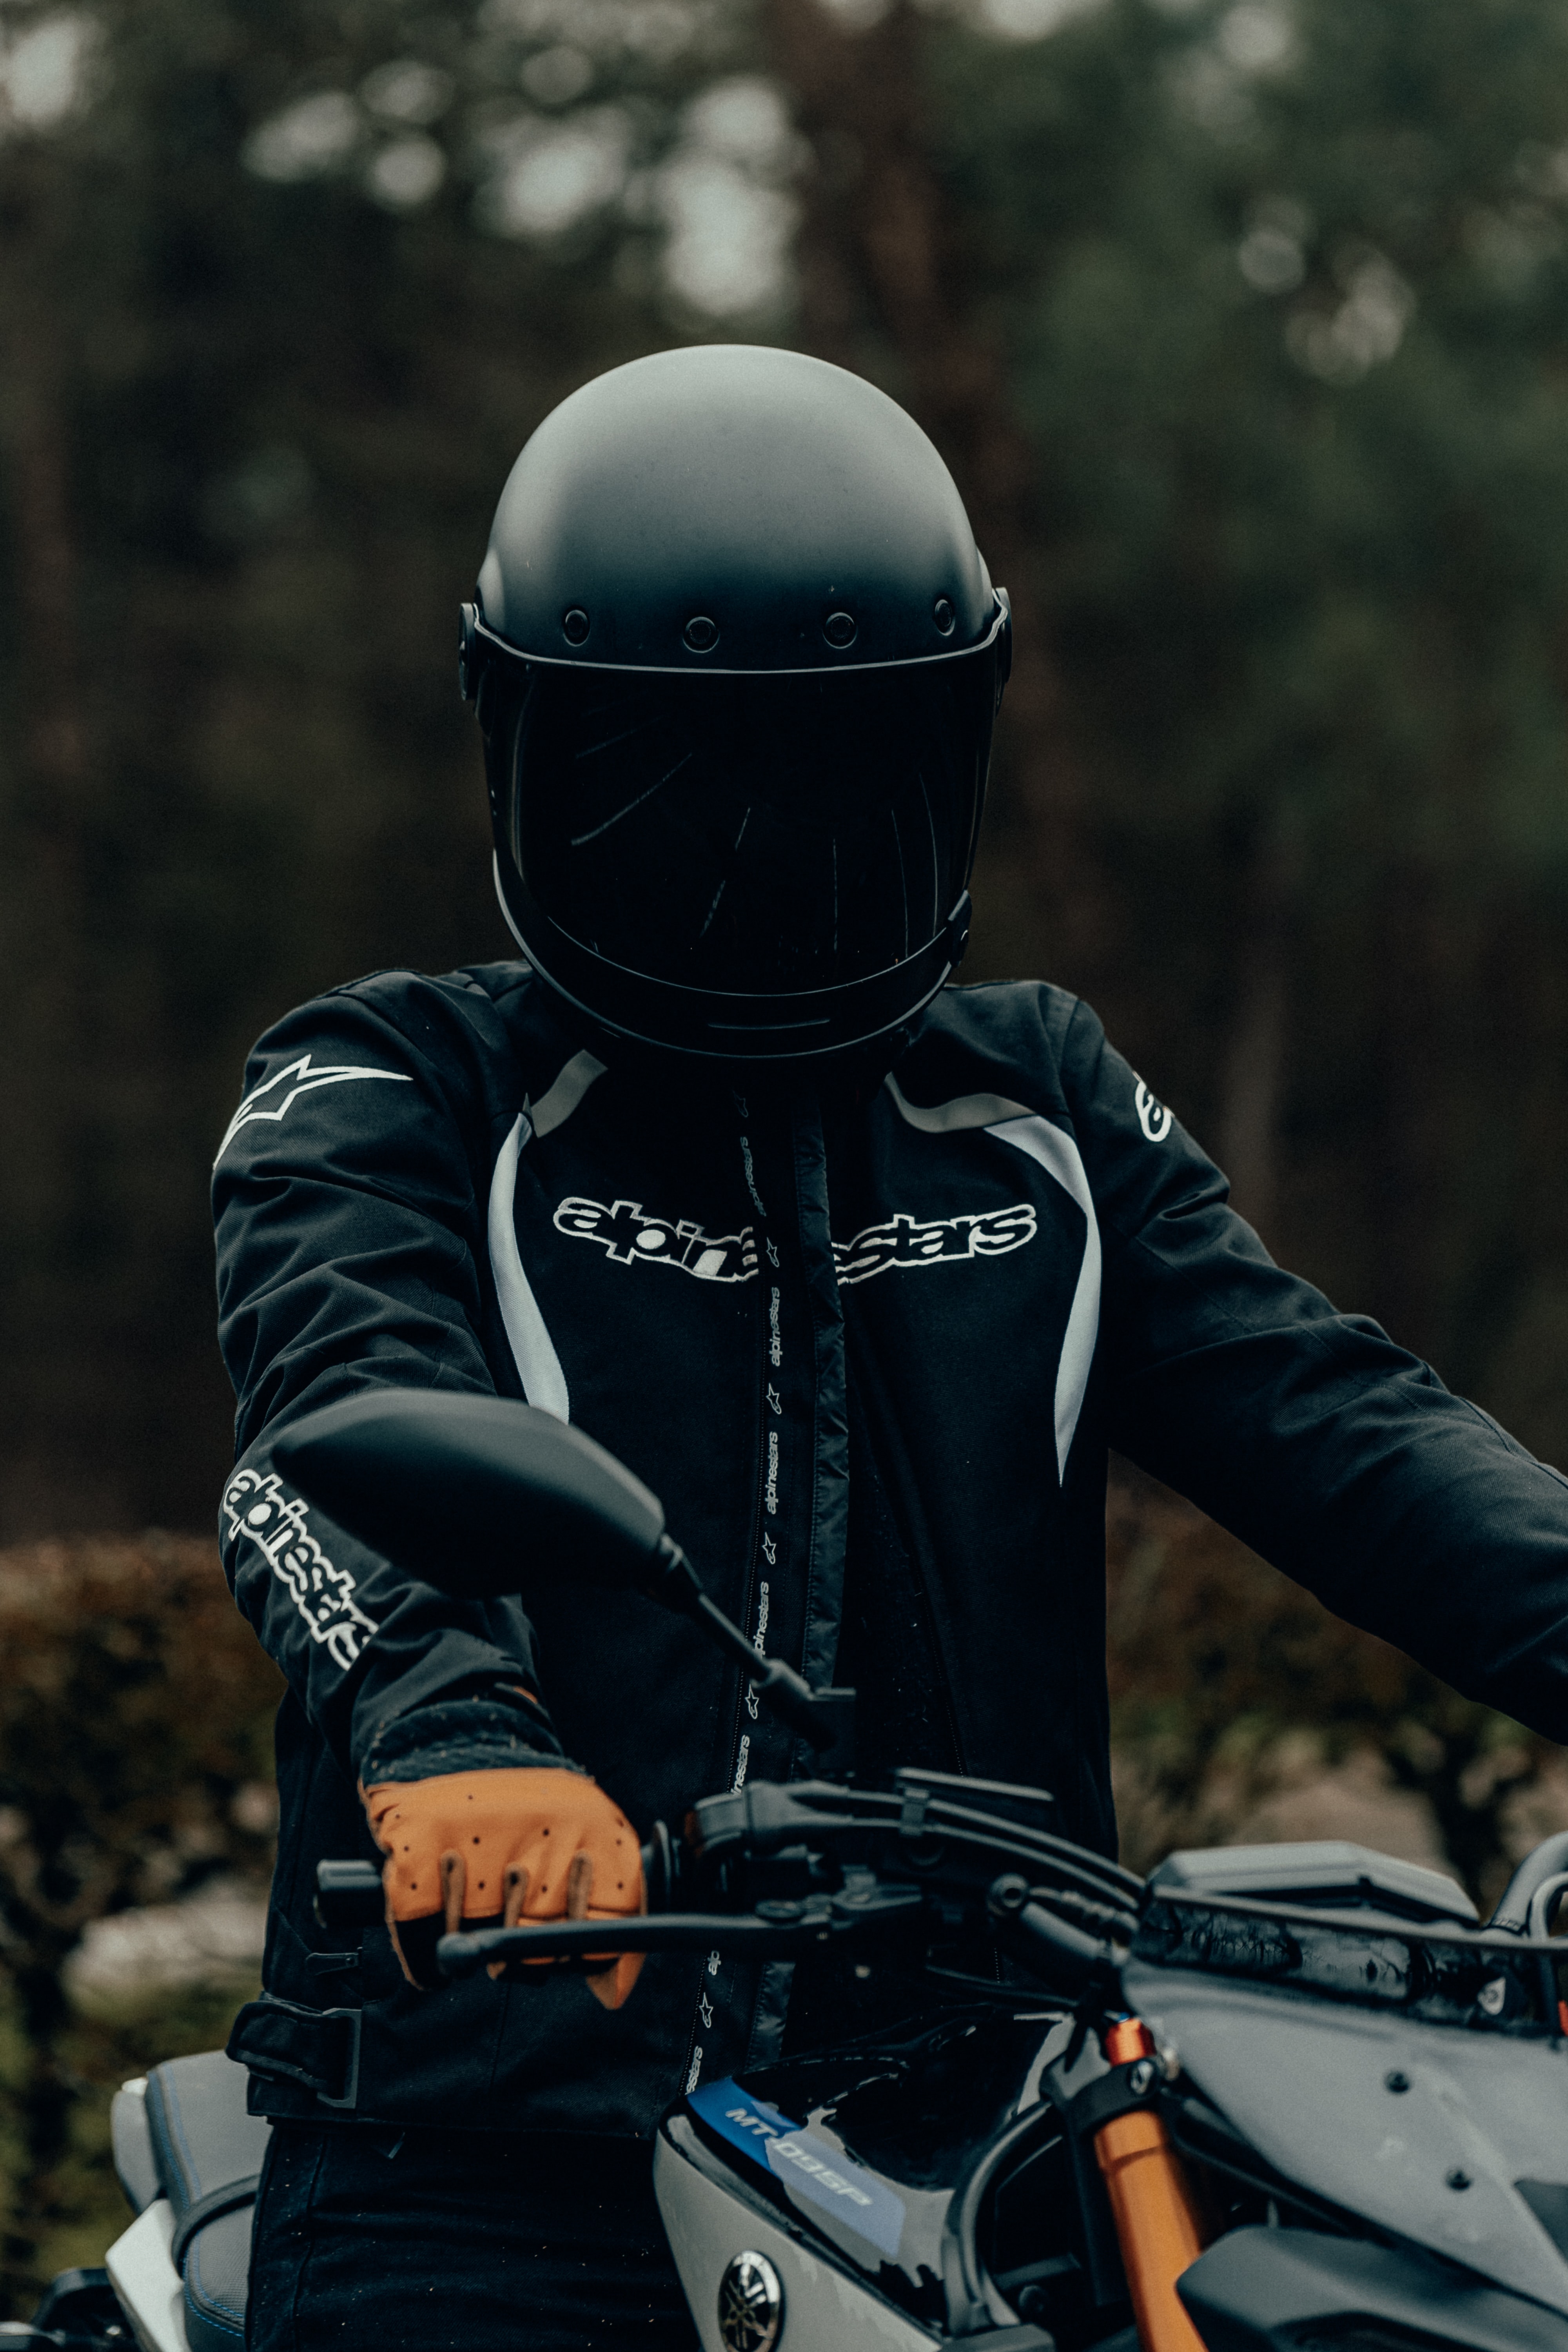 motorcycles, motorcyclist, helmet, motorcycle, steering wheel, rudder 1080p